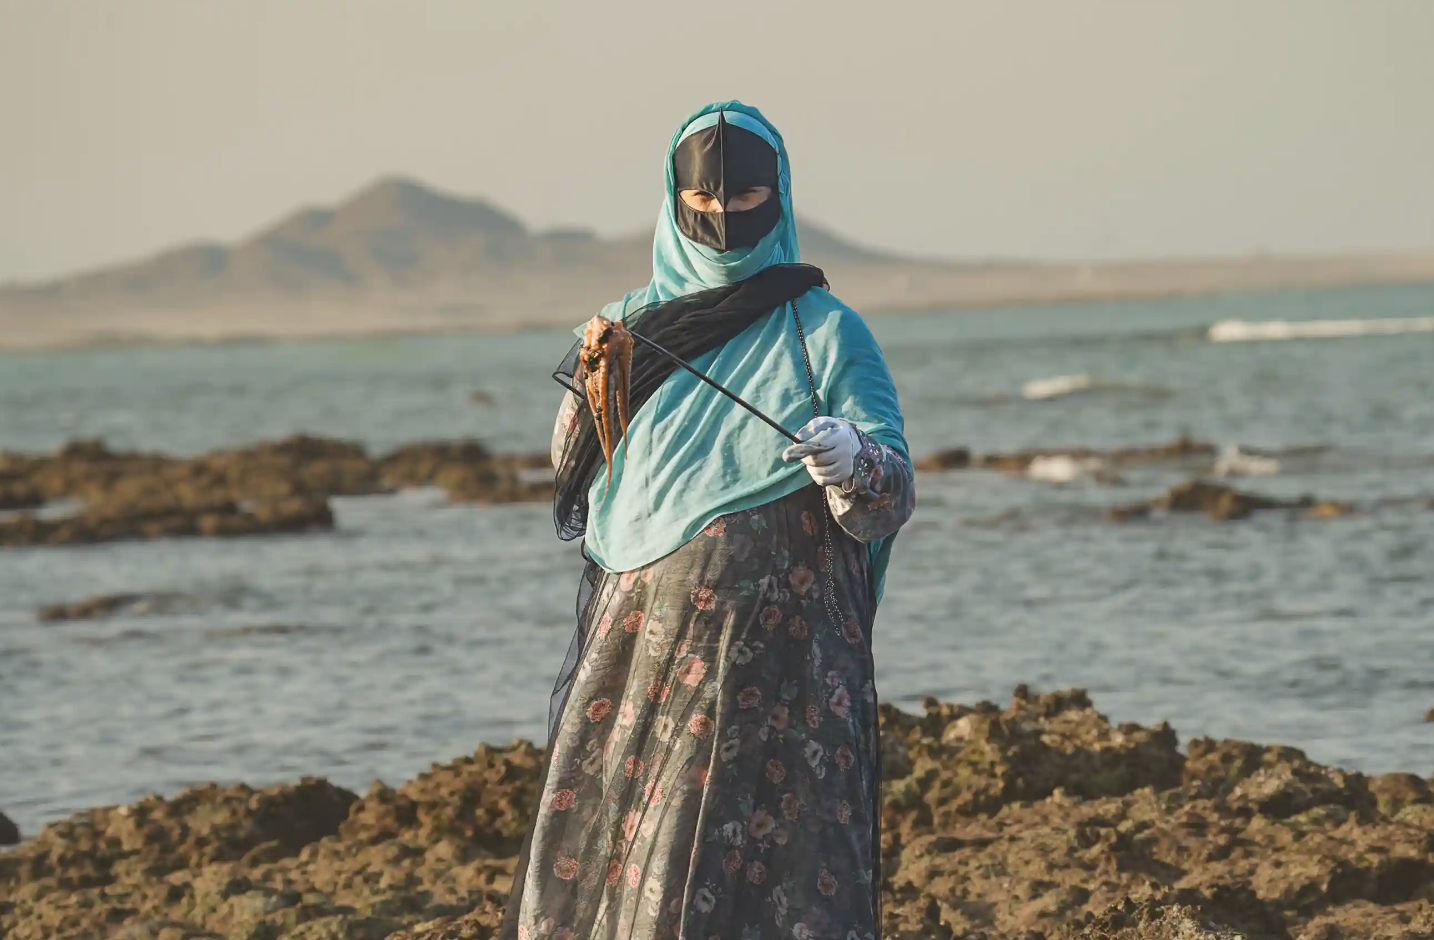 Vùng đất nơi nữ giới sơn móng tay, mặc áo dài truyền thống nhưng cầm lao ra biển săn mực, nghề nghiệp độc đáo nhưng sắp đến hồi kết - Ảnh 1.